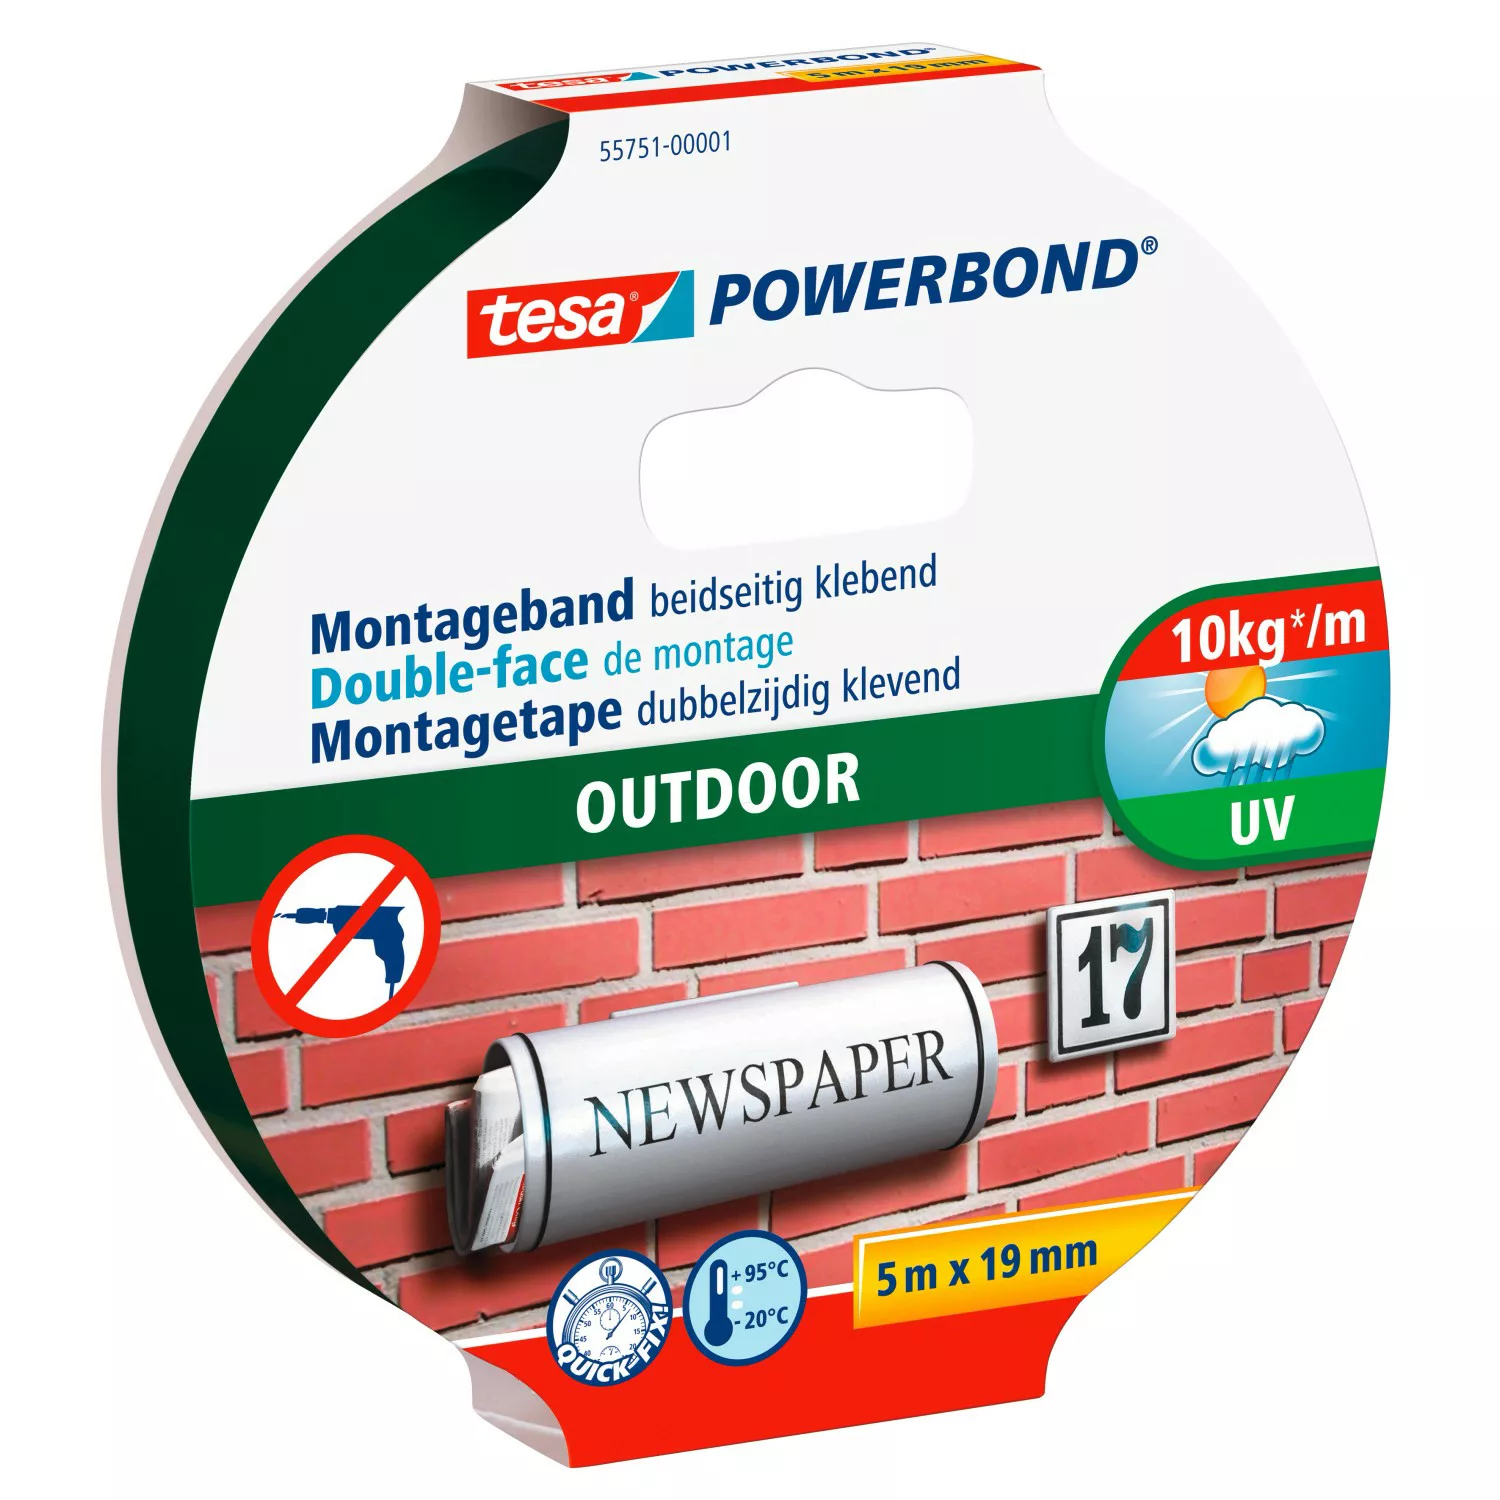 Tesa Powerbond Montageband Outdoor 5 m x 19 mm günstig online kaufen